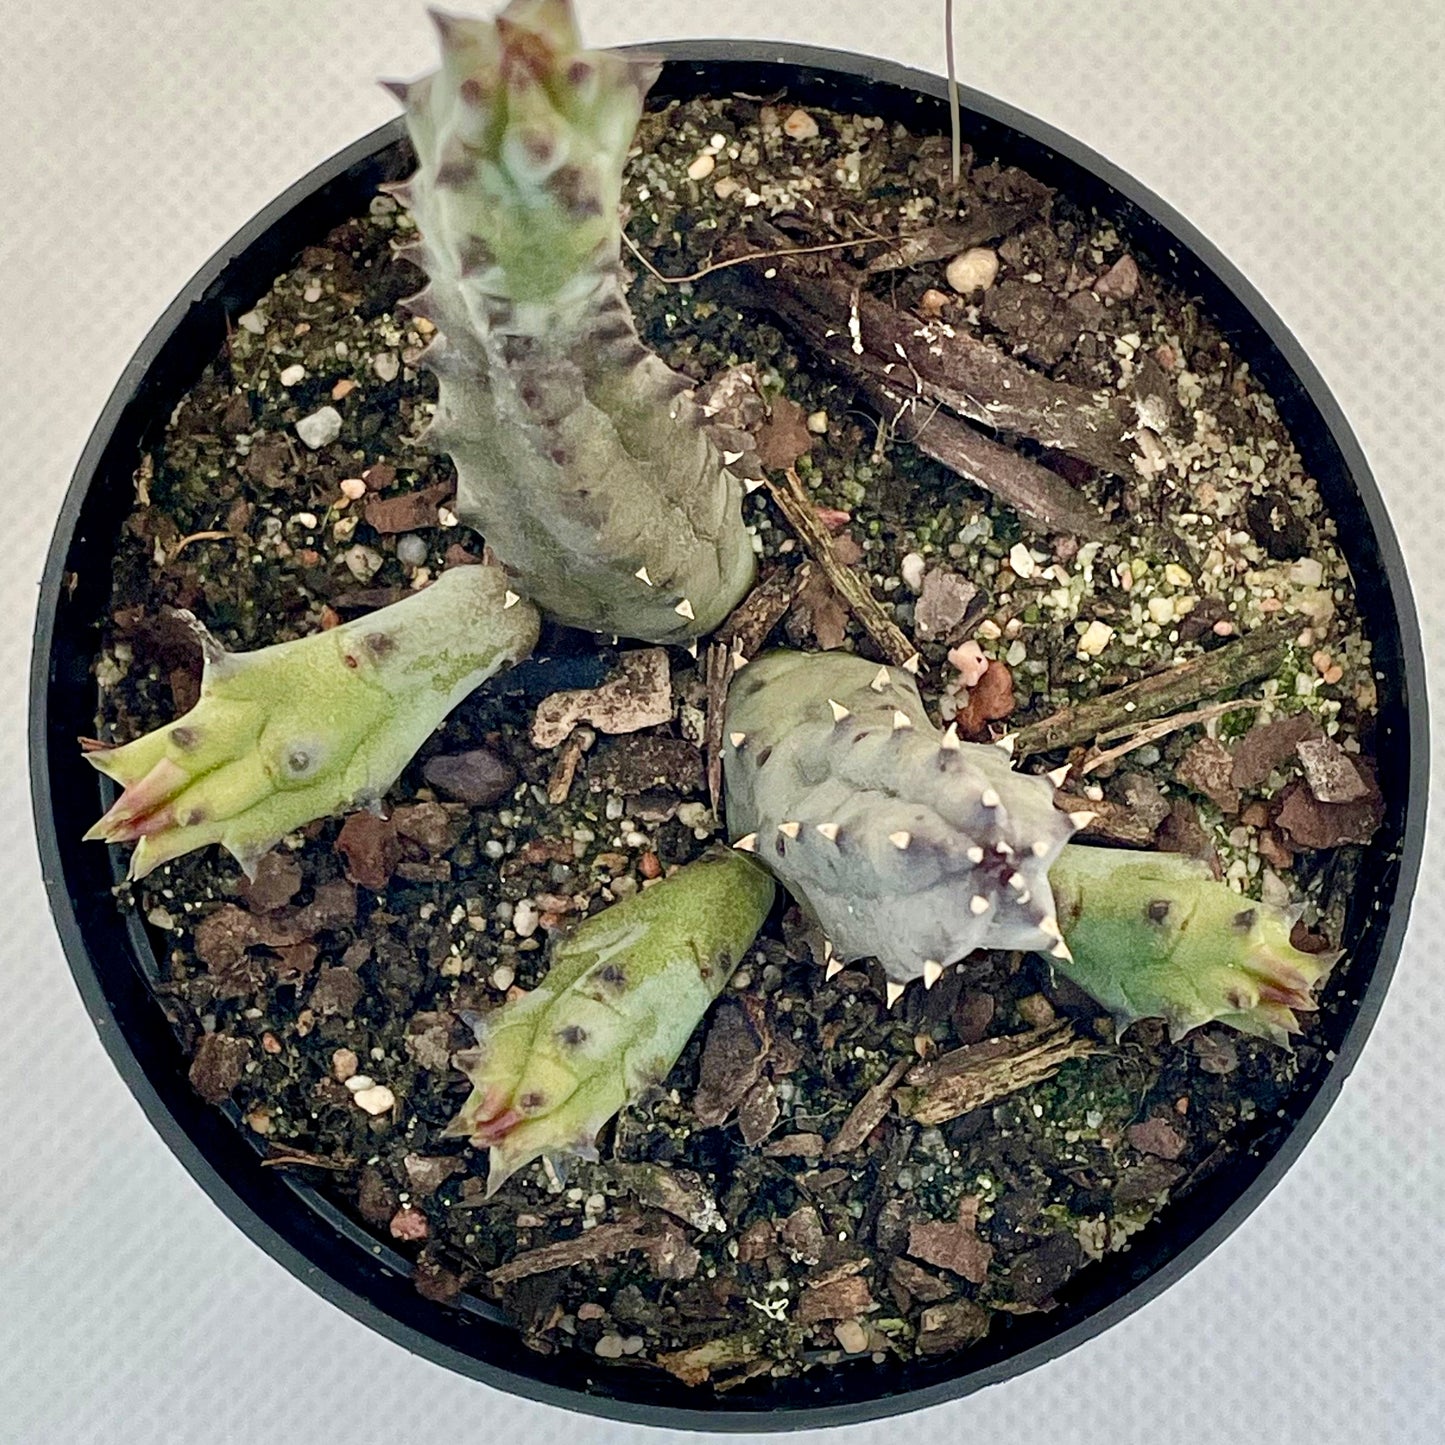 Huernia hystrix subsp. parvula